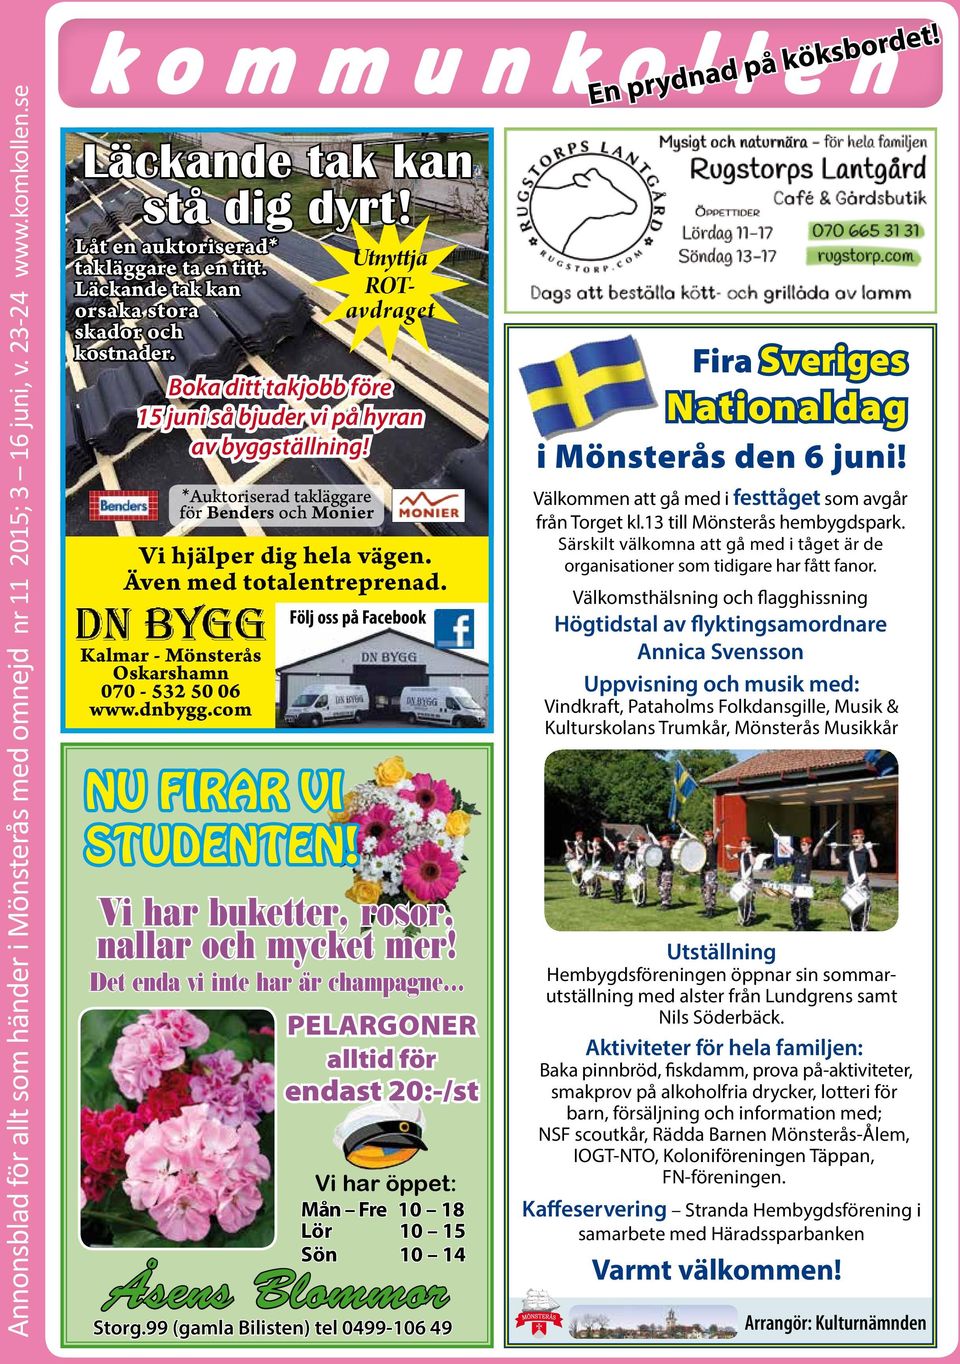 Kalmar - Mönsterås Oskarshamn 070-532 50 06 www.dnbygg.com *Auktoriserad takläggare för Benders och Monier Följ oss på Facebook nu firar vi studenten! Vi har buketter, rosor, nallar och mycket mer!